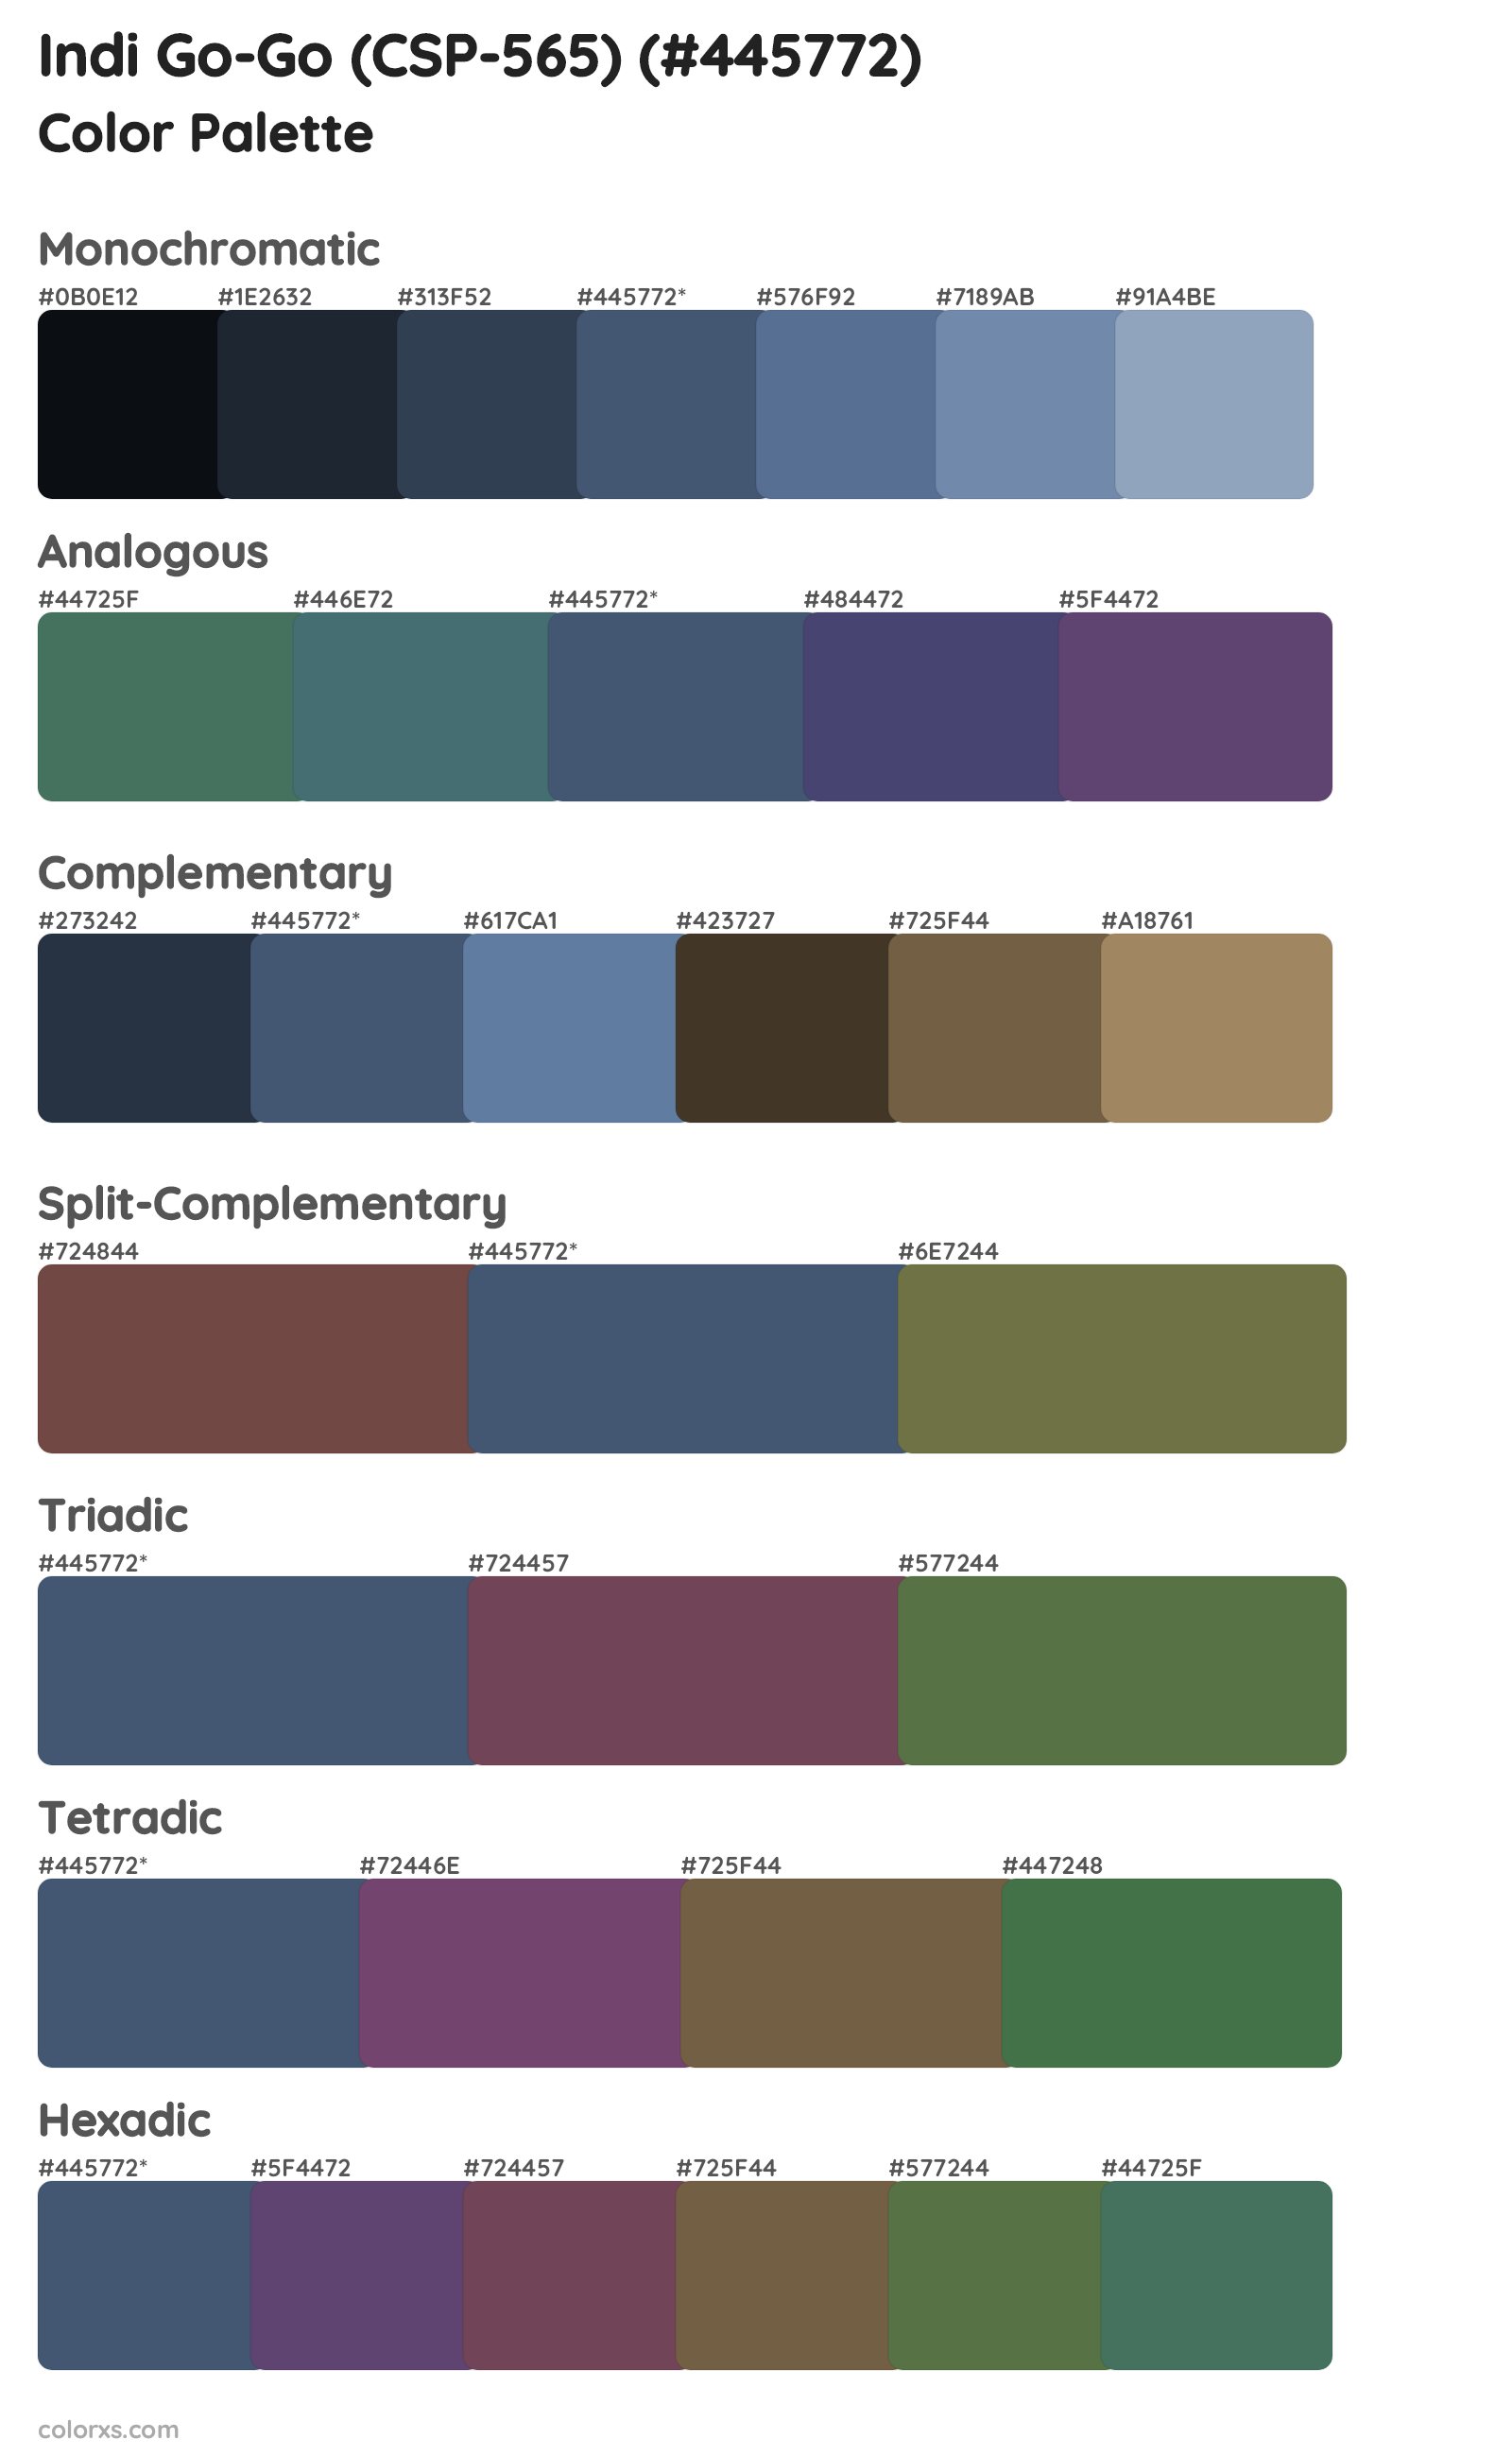 Indi Go-Go (CSP-565) Color Scheme Palettes